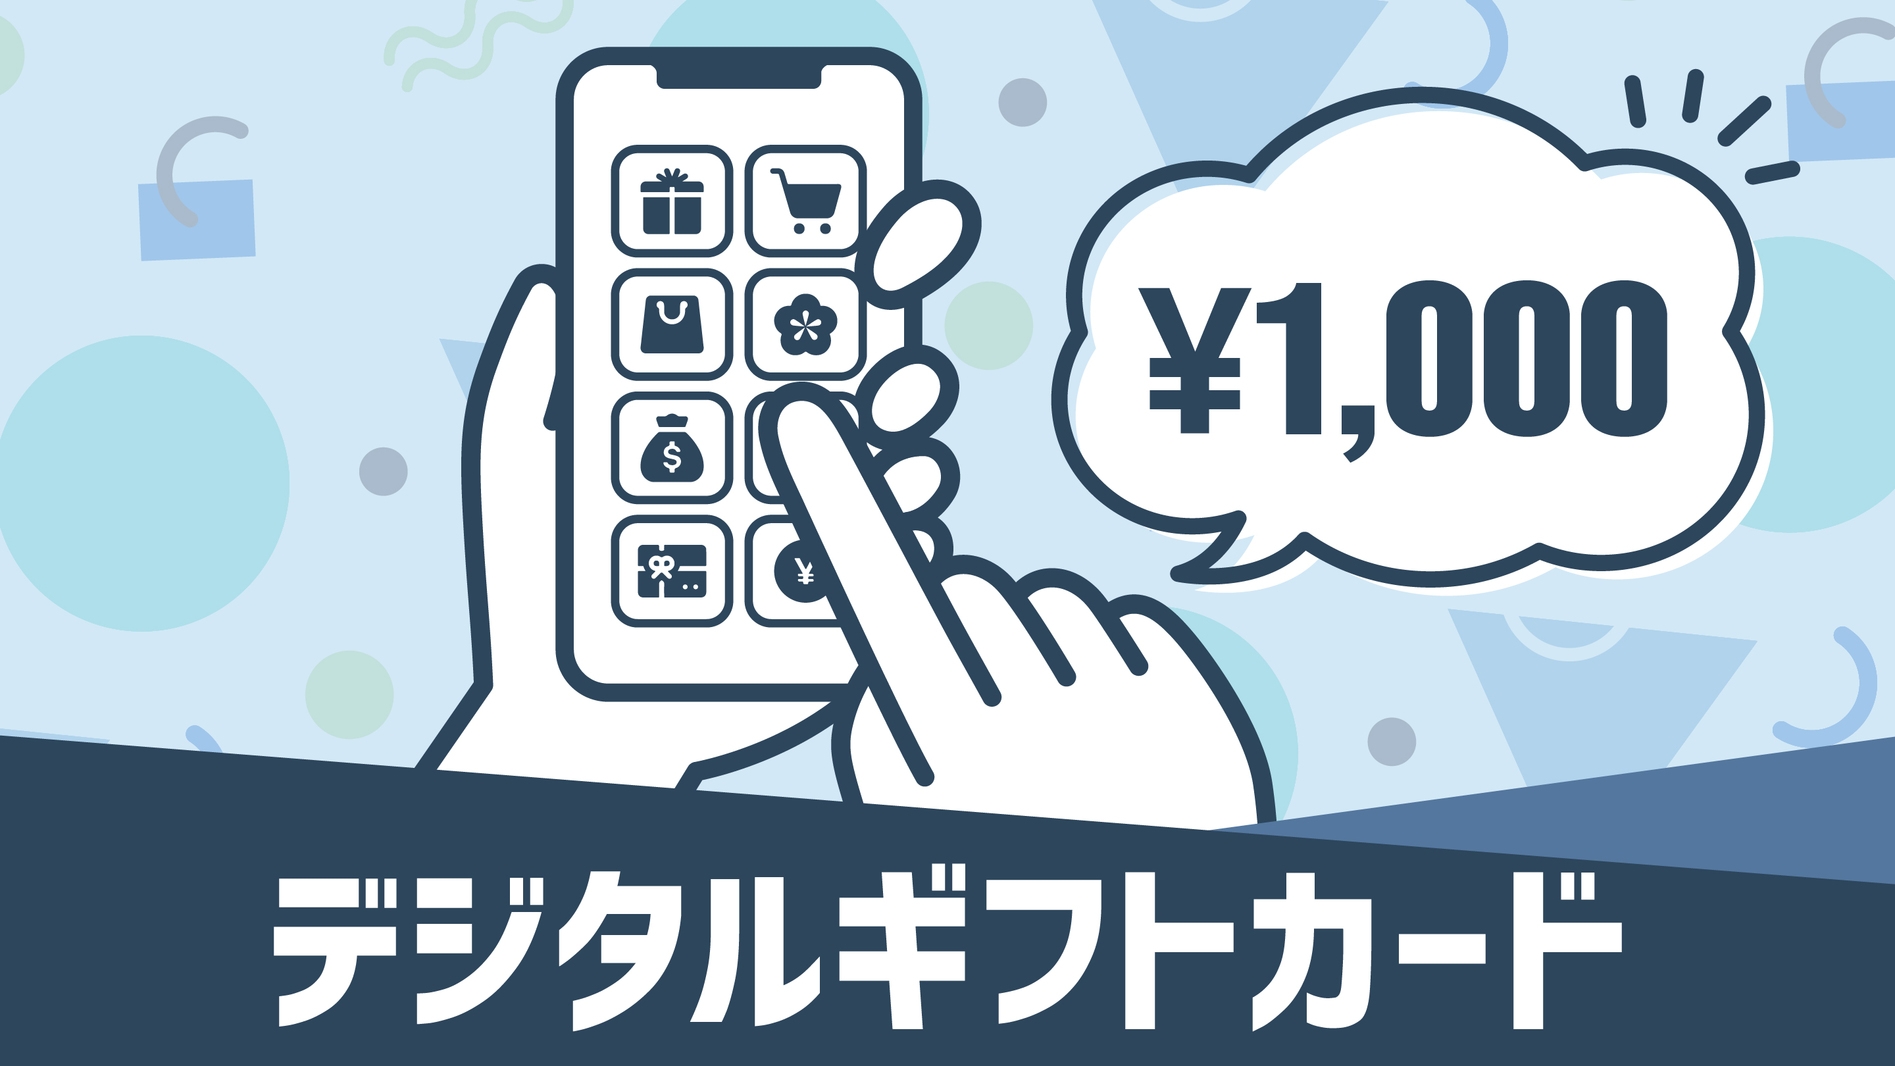 【バイキング朝食付】マルチギフトカード1000円付プラン